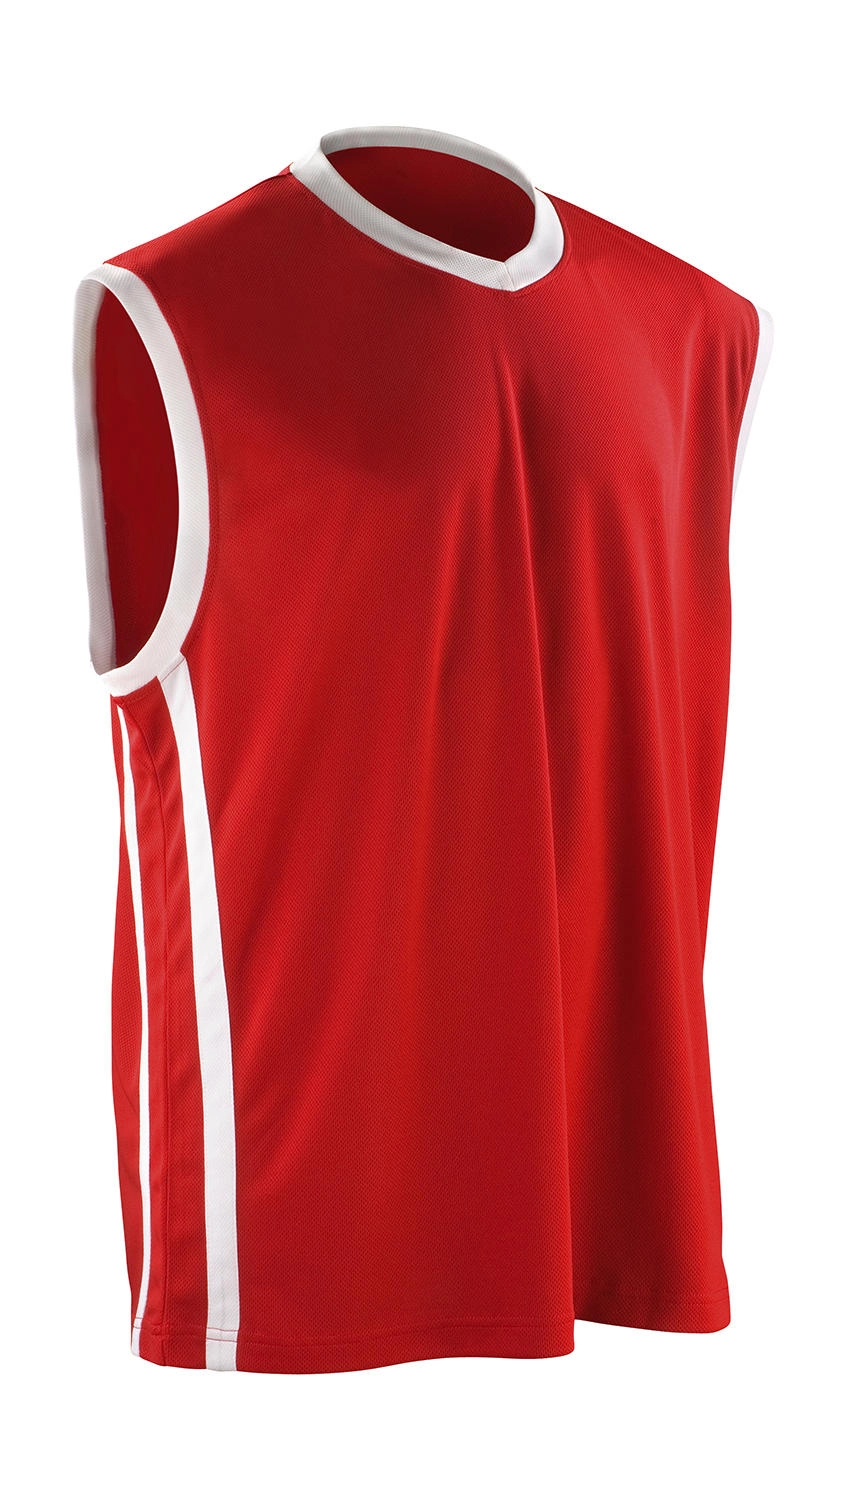 Men`s Quick Dry Basketball Top zum Besticken und Bedrucken in der Farbe Red/White mit Ihren Logo, Schriftzug oder Motiv.